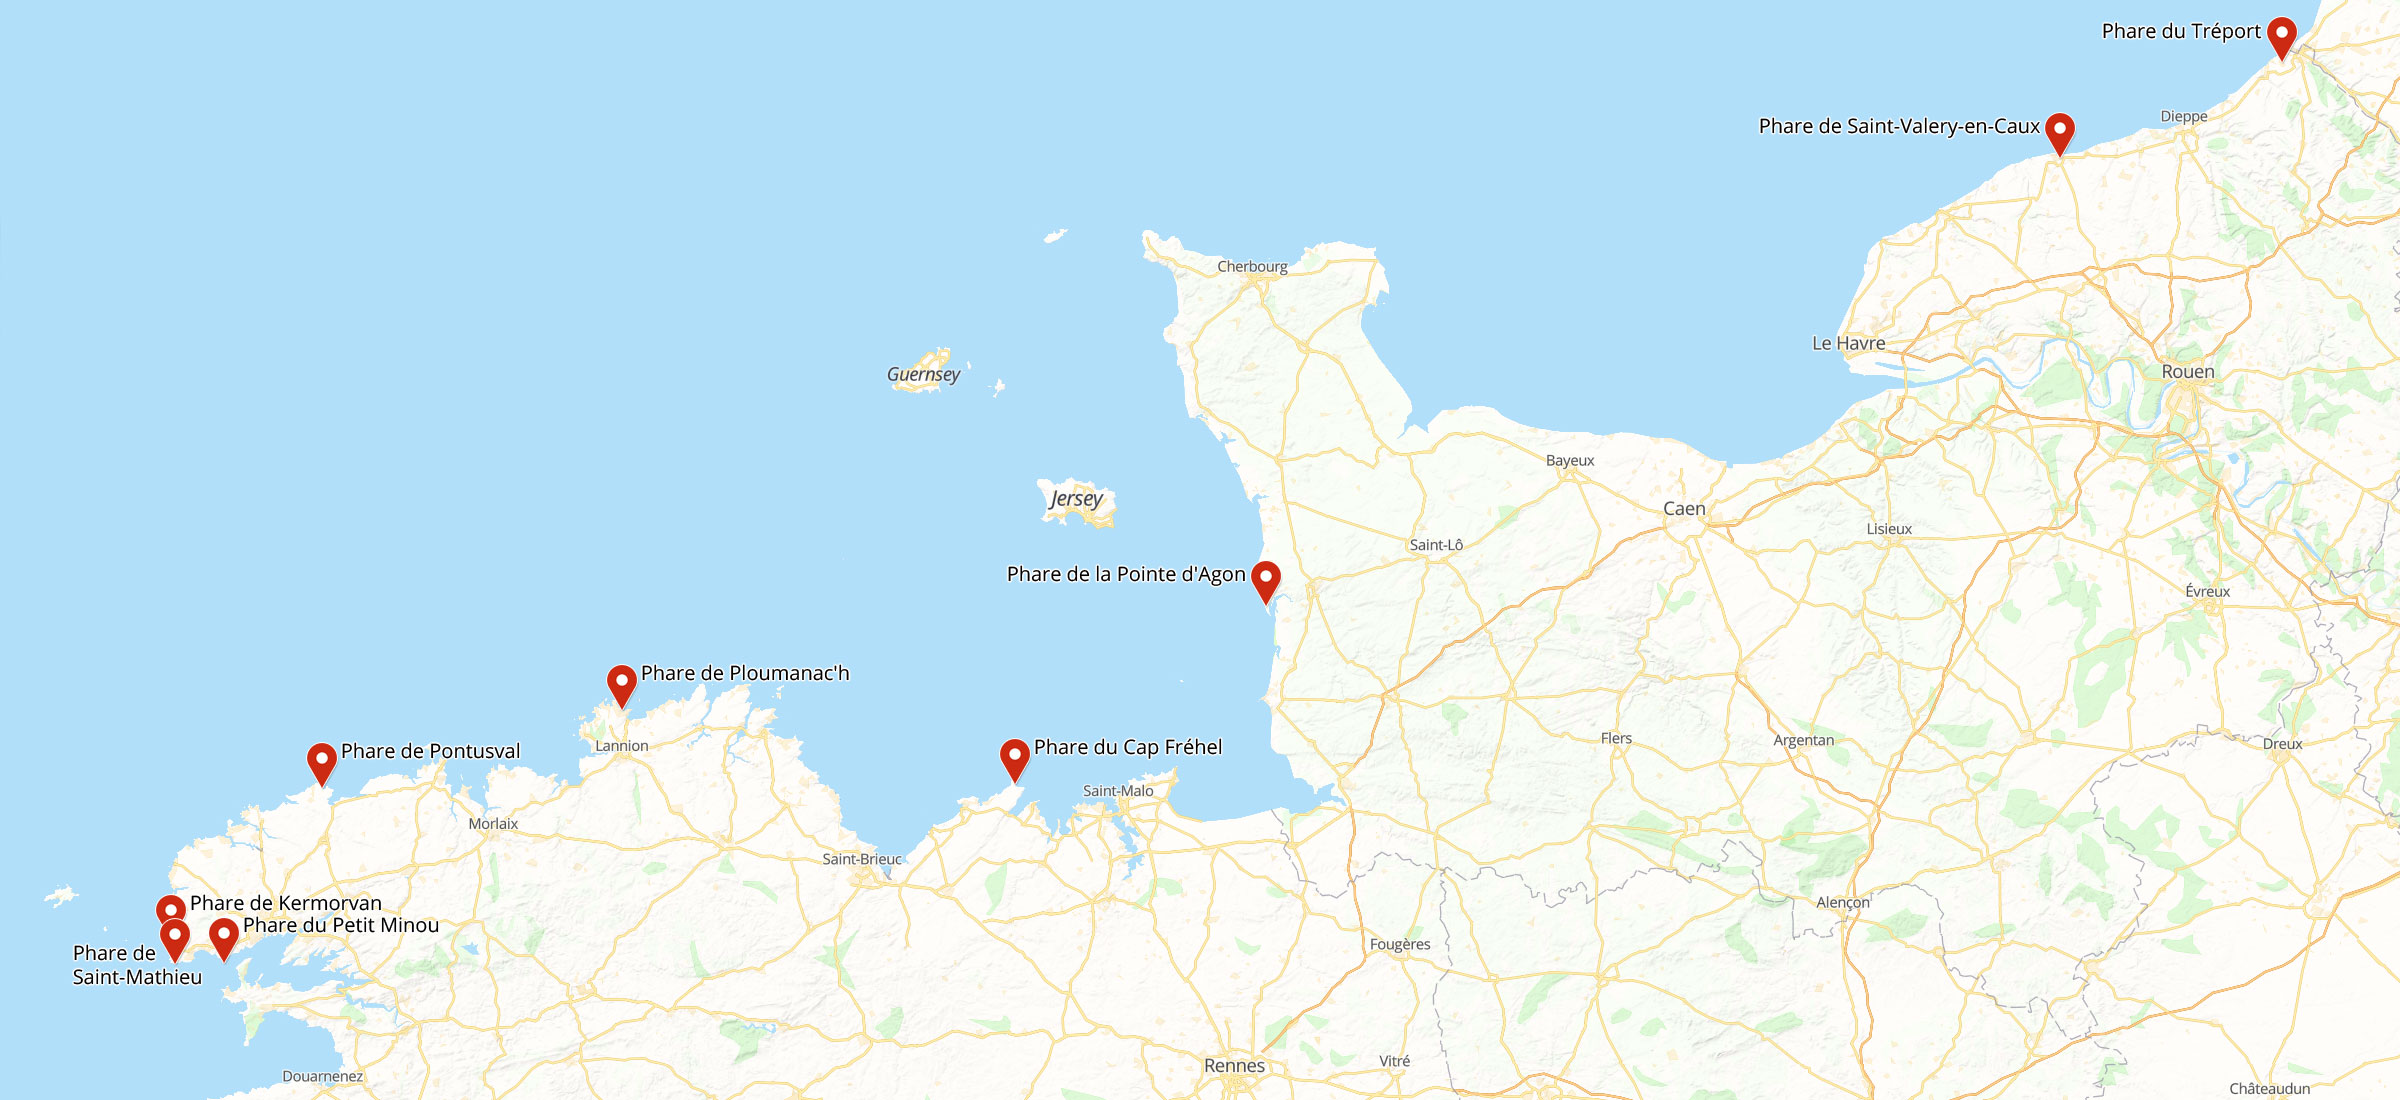 Karte von Leuchttürmen in der Normandie und Bretagne